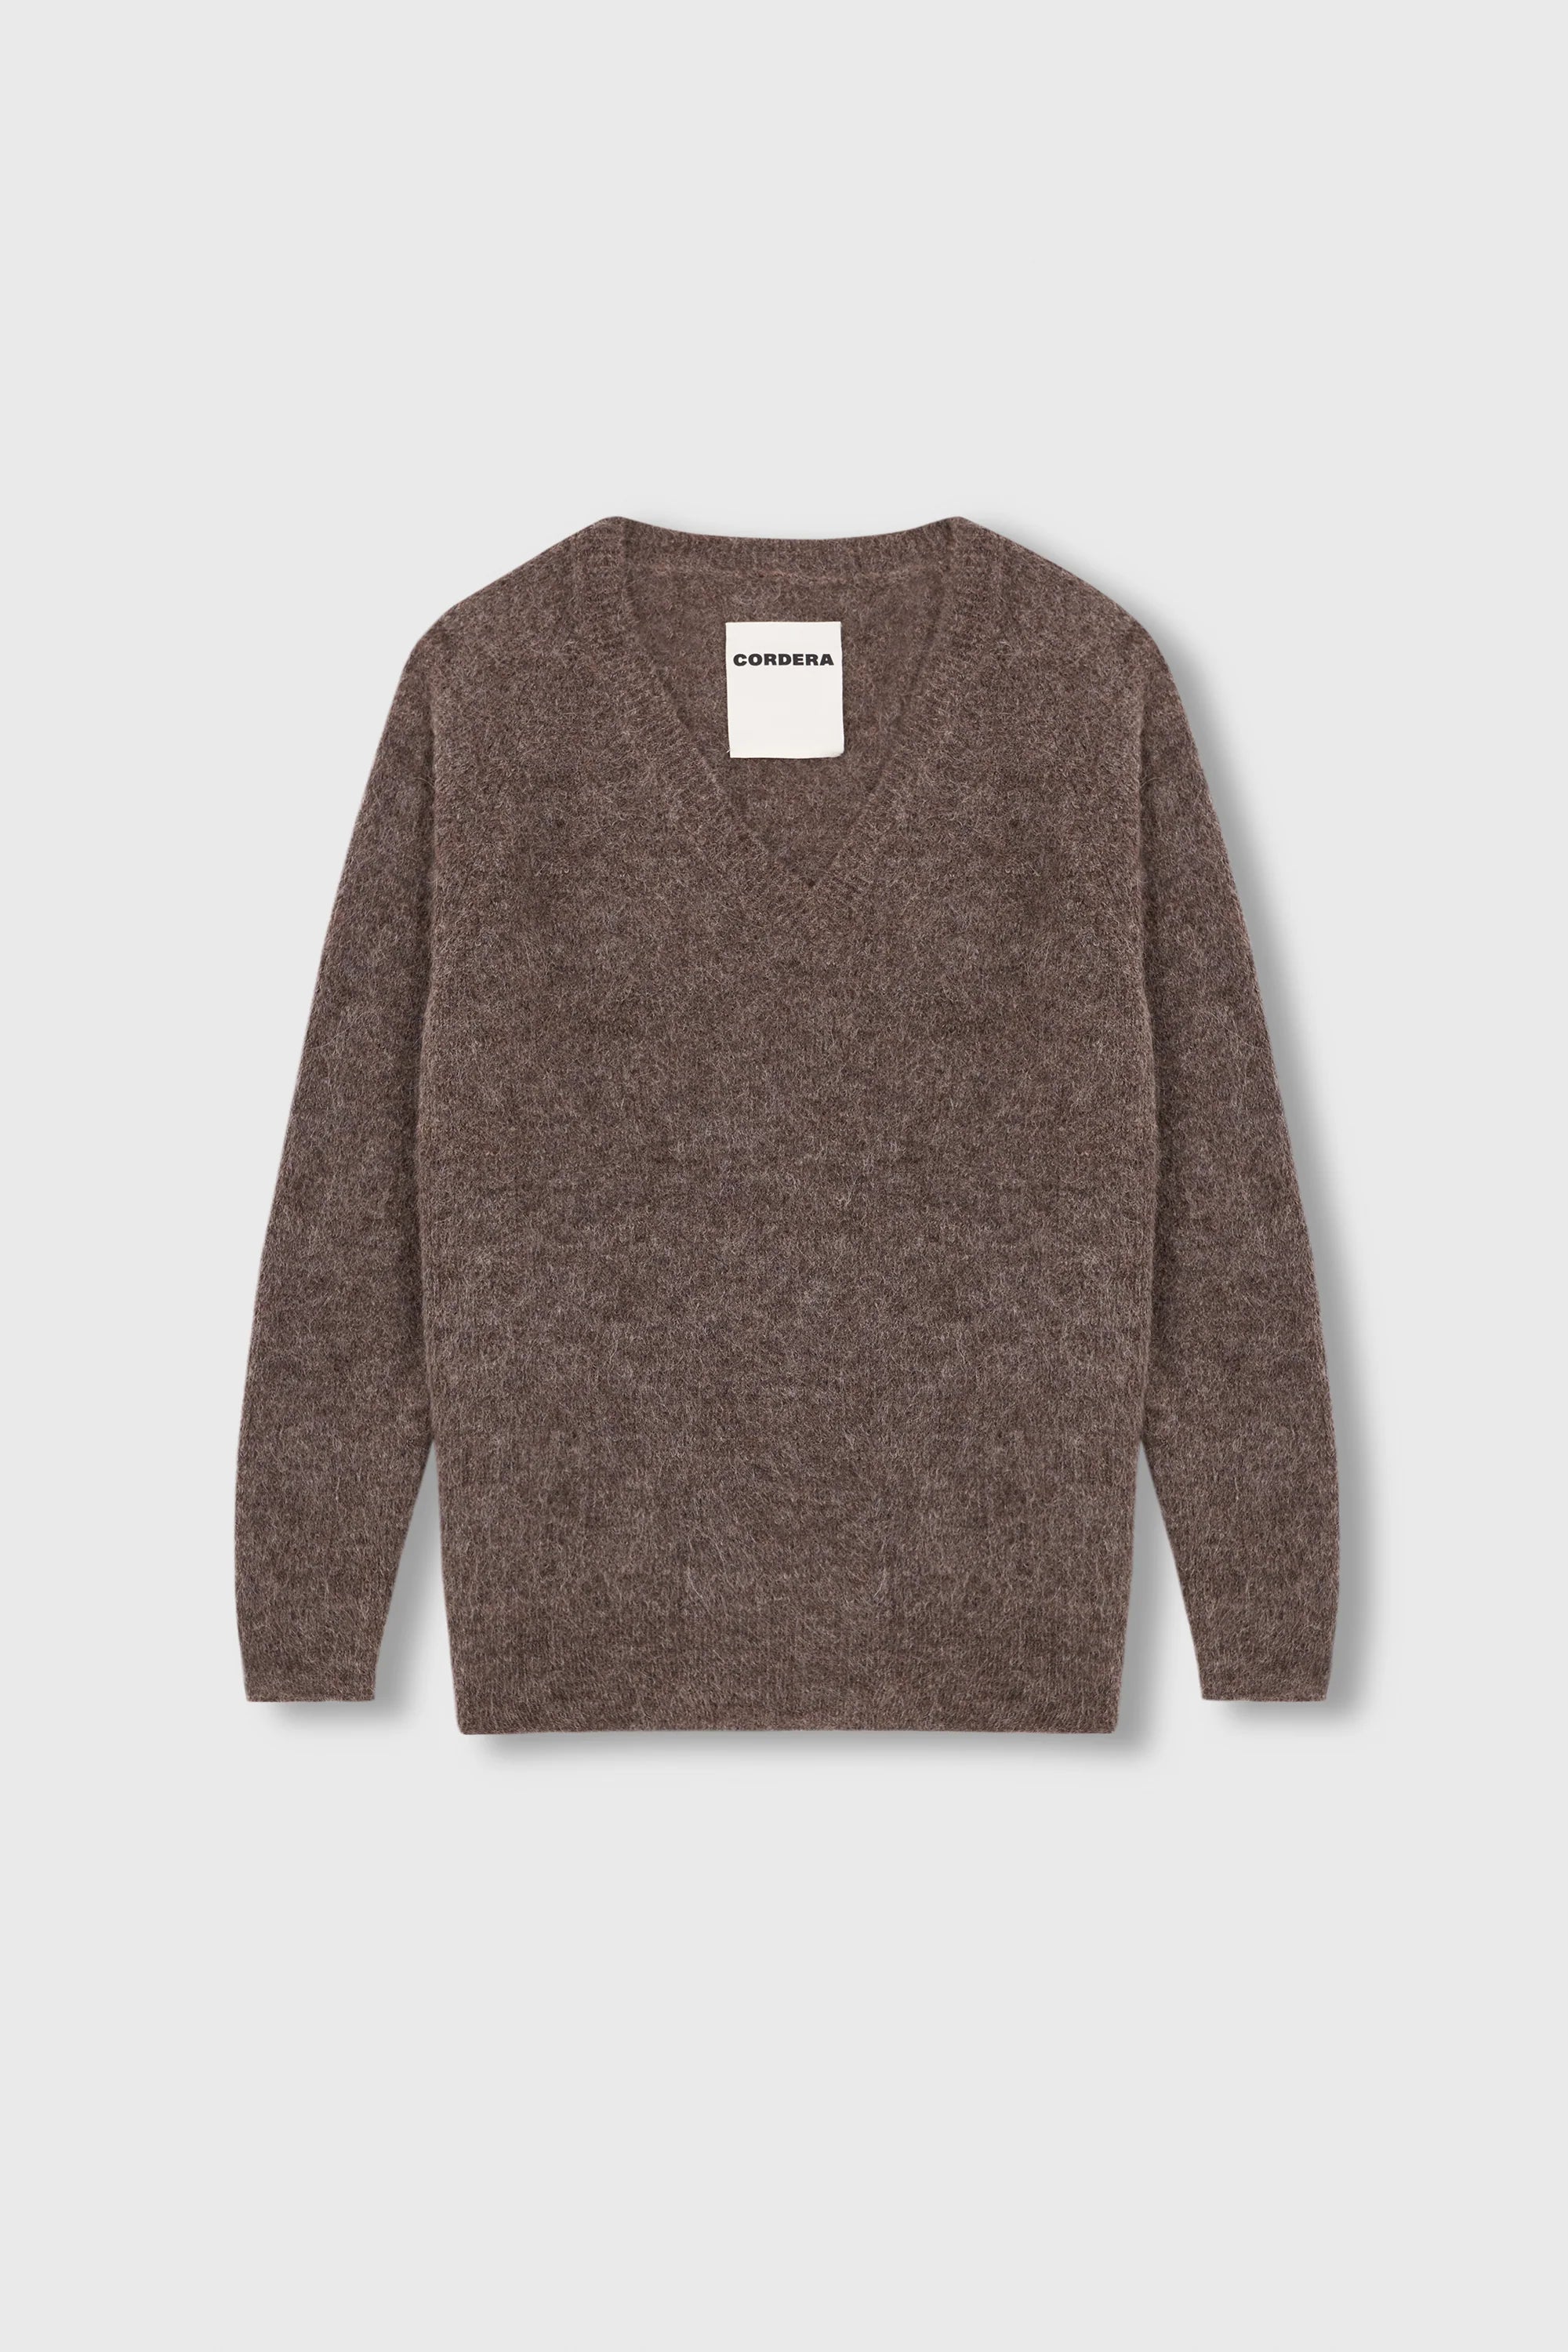 Cordera Suri V-neck Sweater Donna - 4